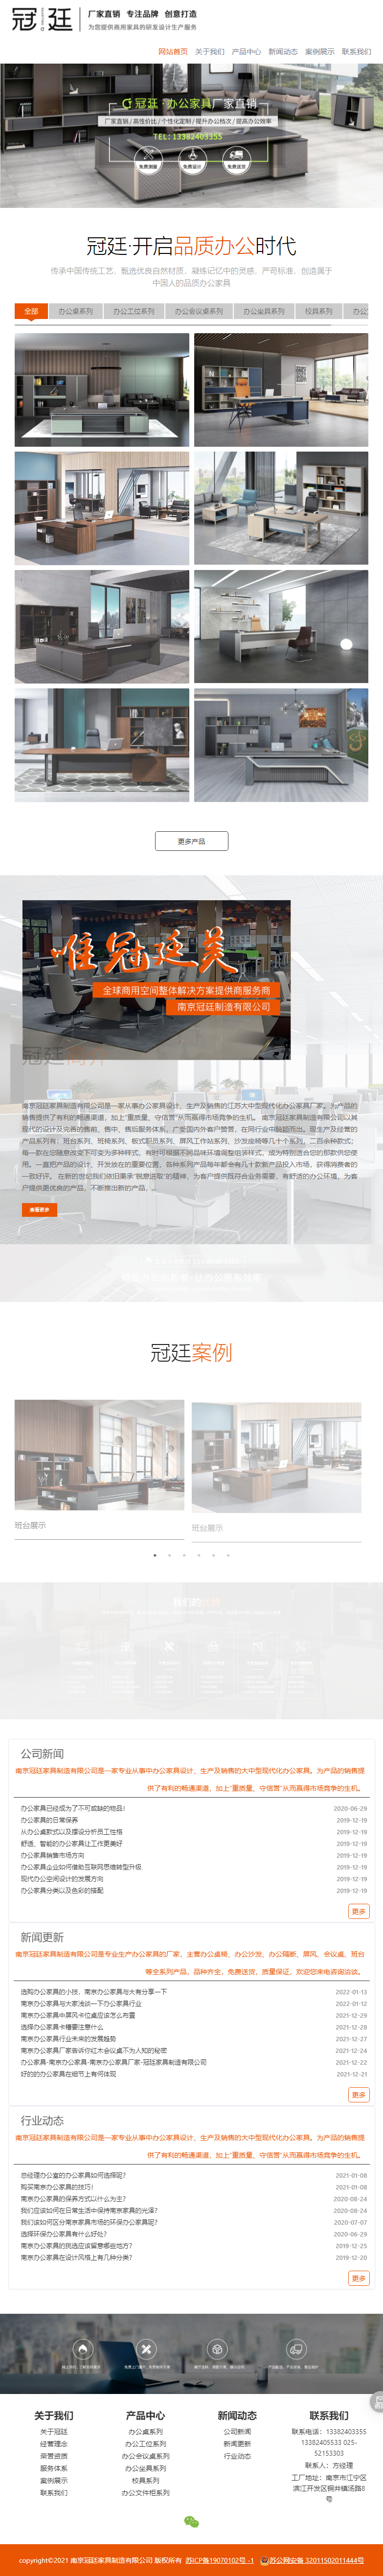 南京冠廷家具制造有限公司网站案例